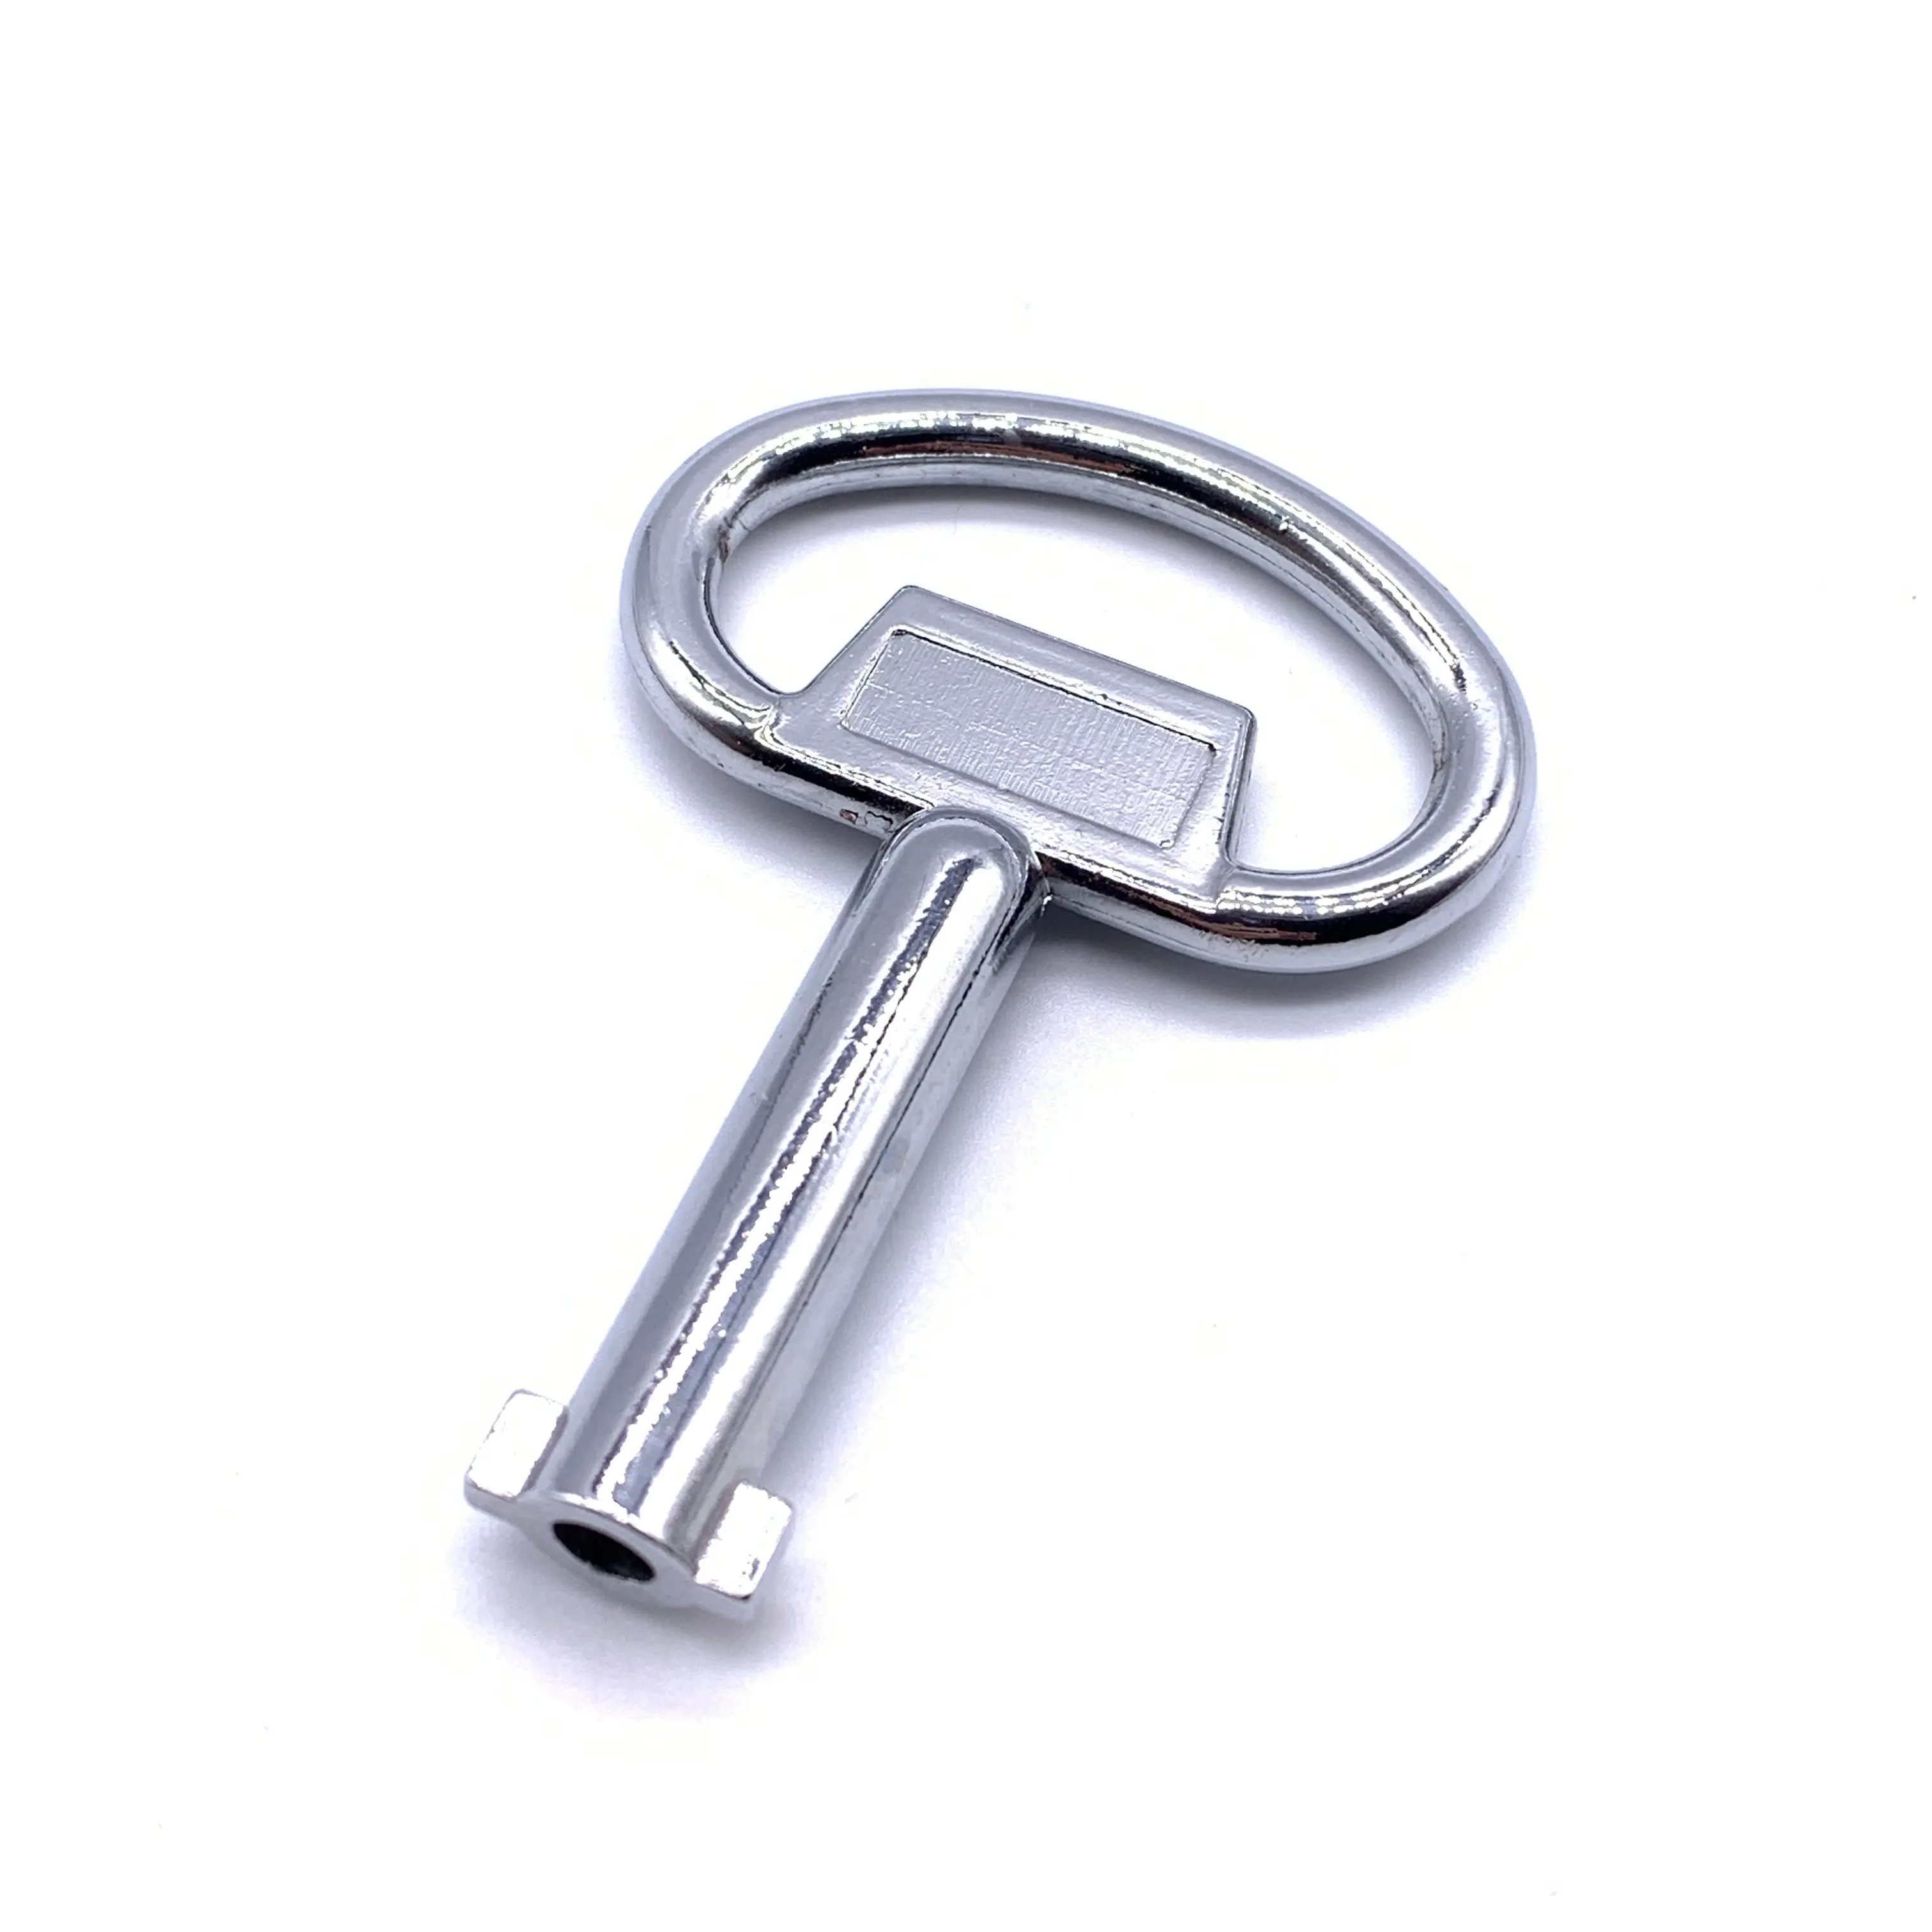 MS705 Double bit keys 1/4 turn lock keys electrical cabinet keys